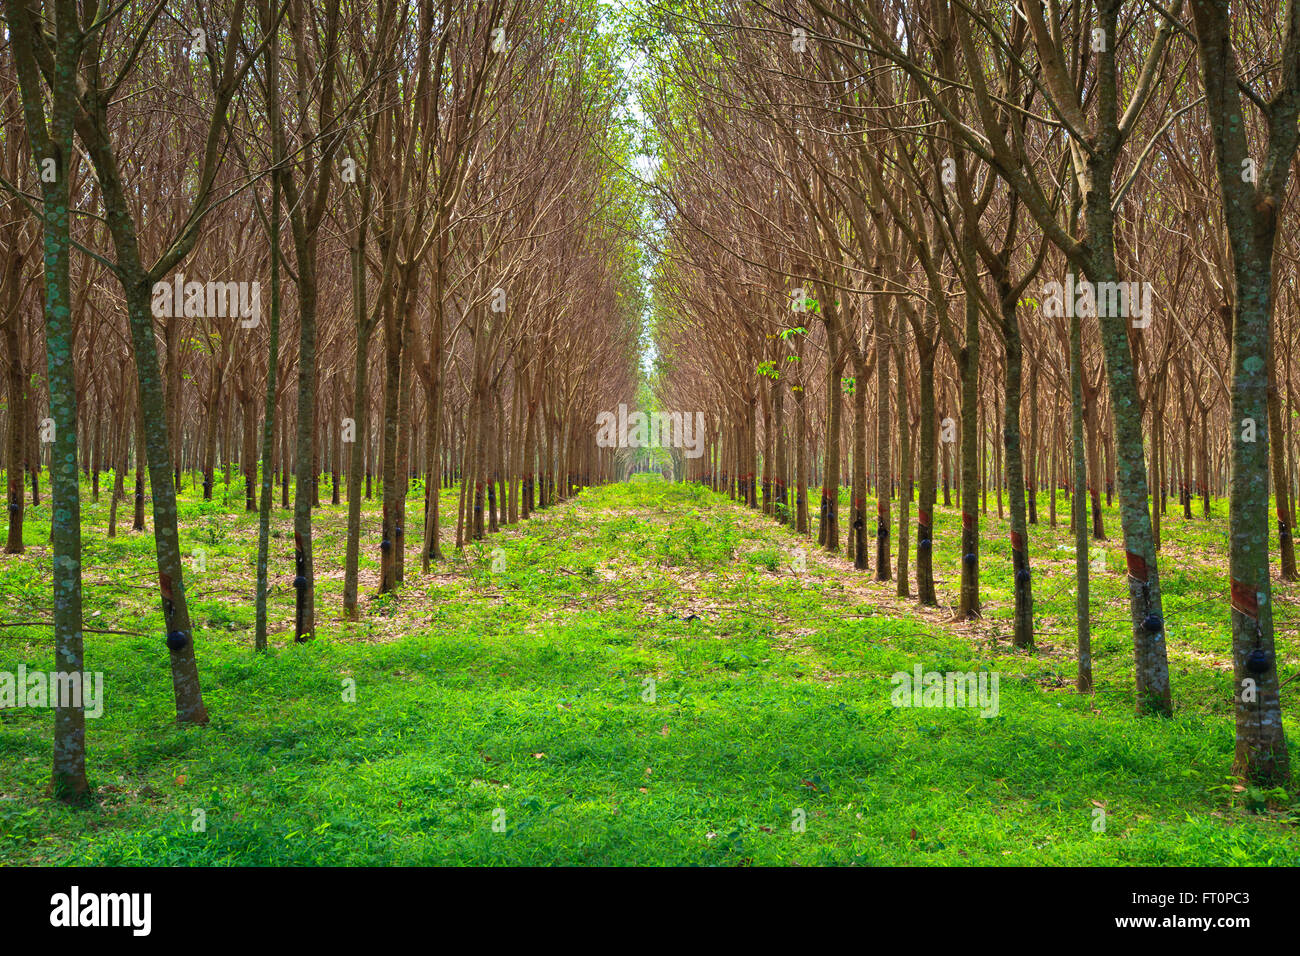 namens Verheugen Sluit een verzekering af Para rubber tree garden in south of Thailand Stock Photo - Alamy